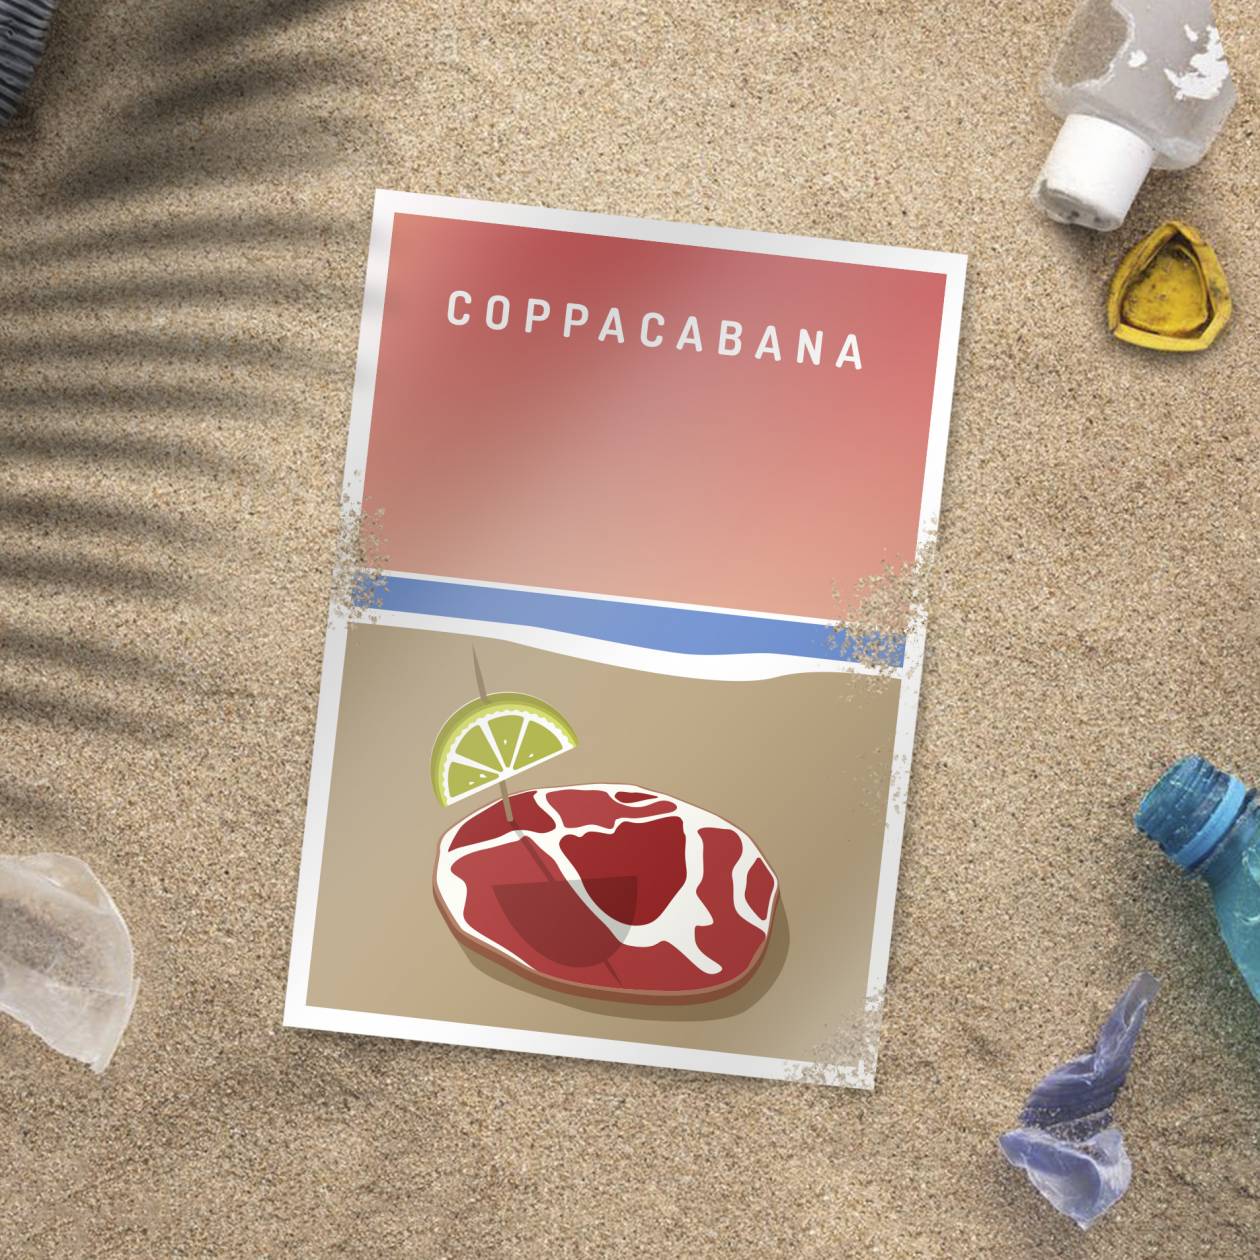 Coppa Cabana